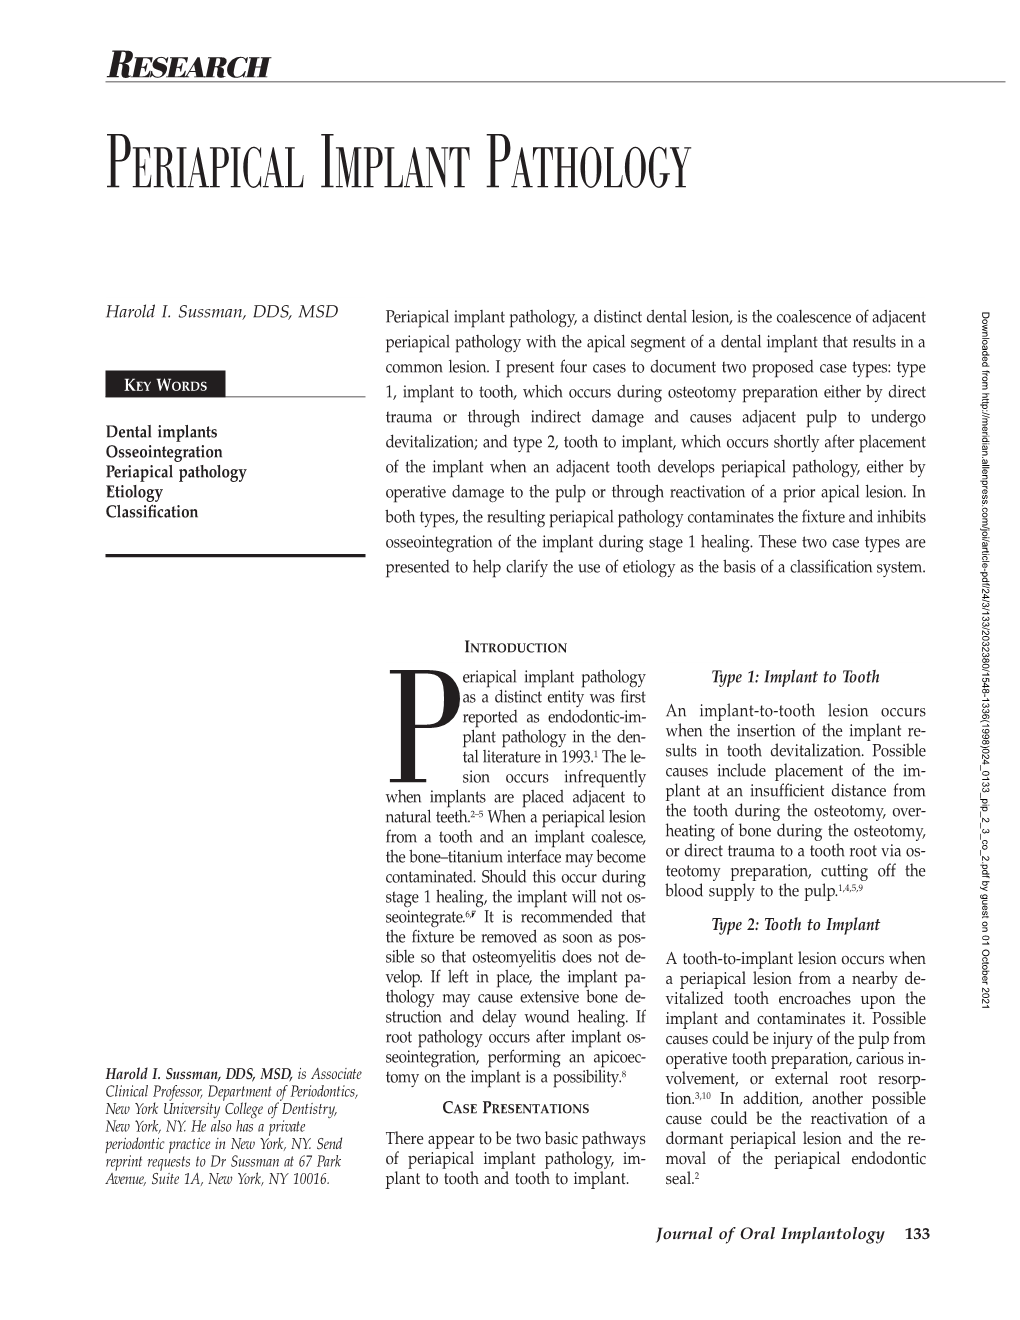 Periapical Implant Pathology